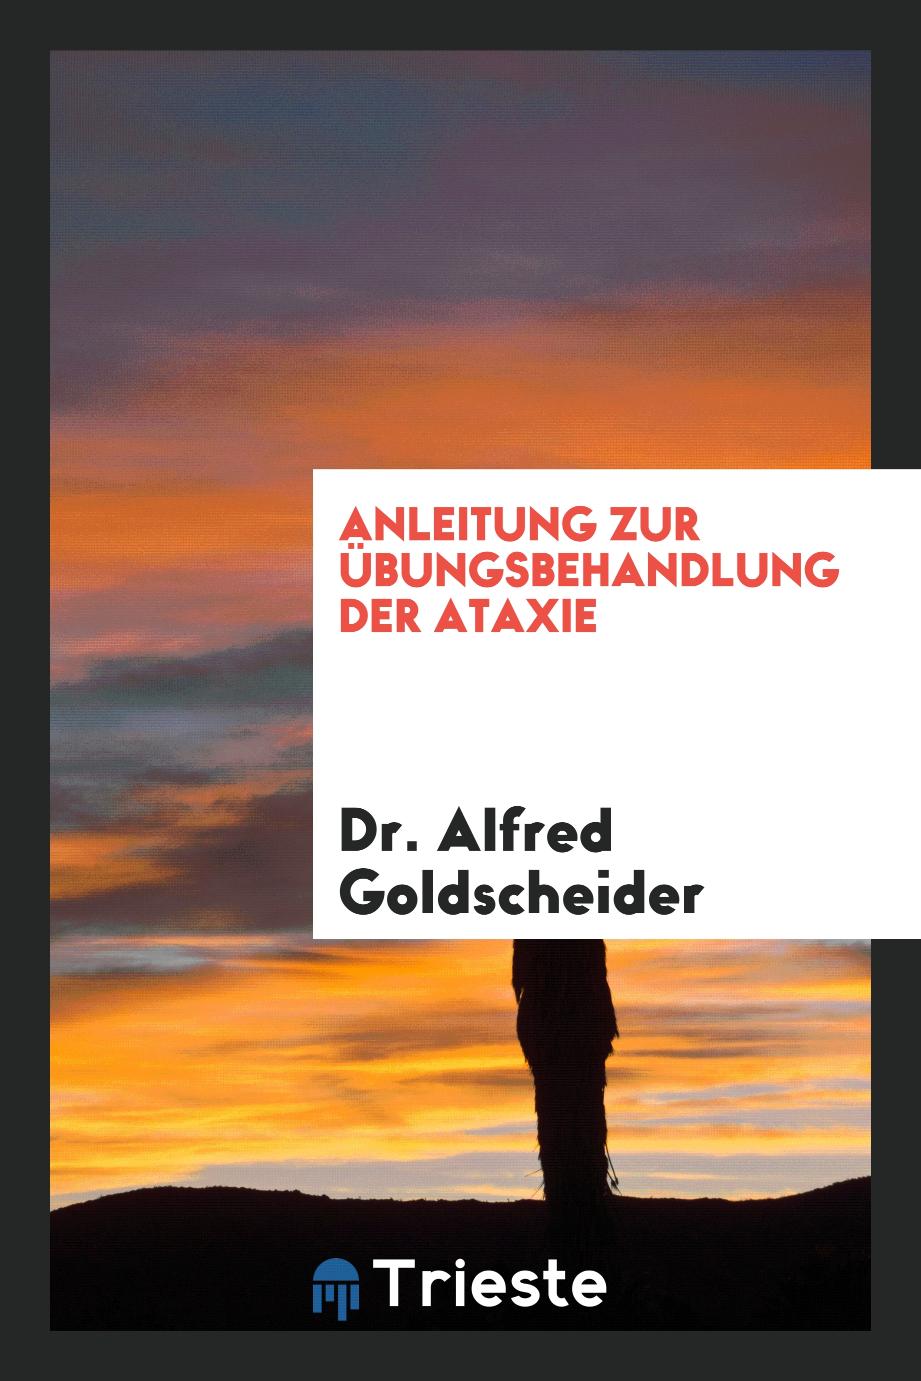 Dr. Alfred Goldscheider - Anleitung zur Übungsbehandlung der Ataxie